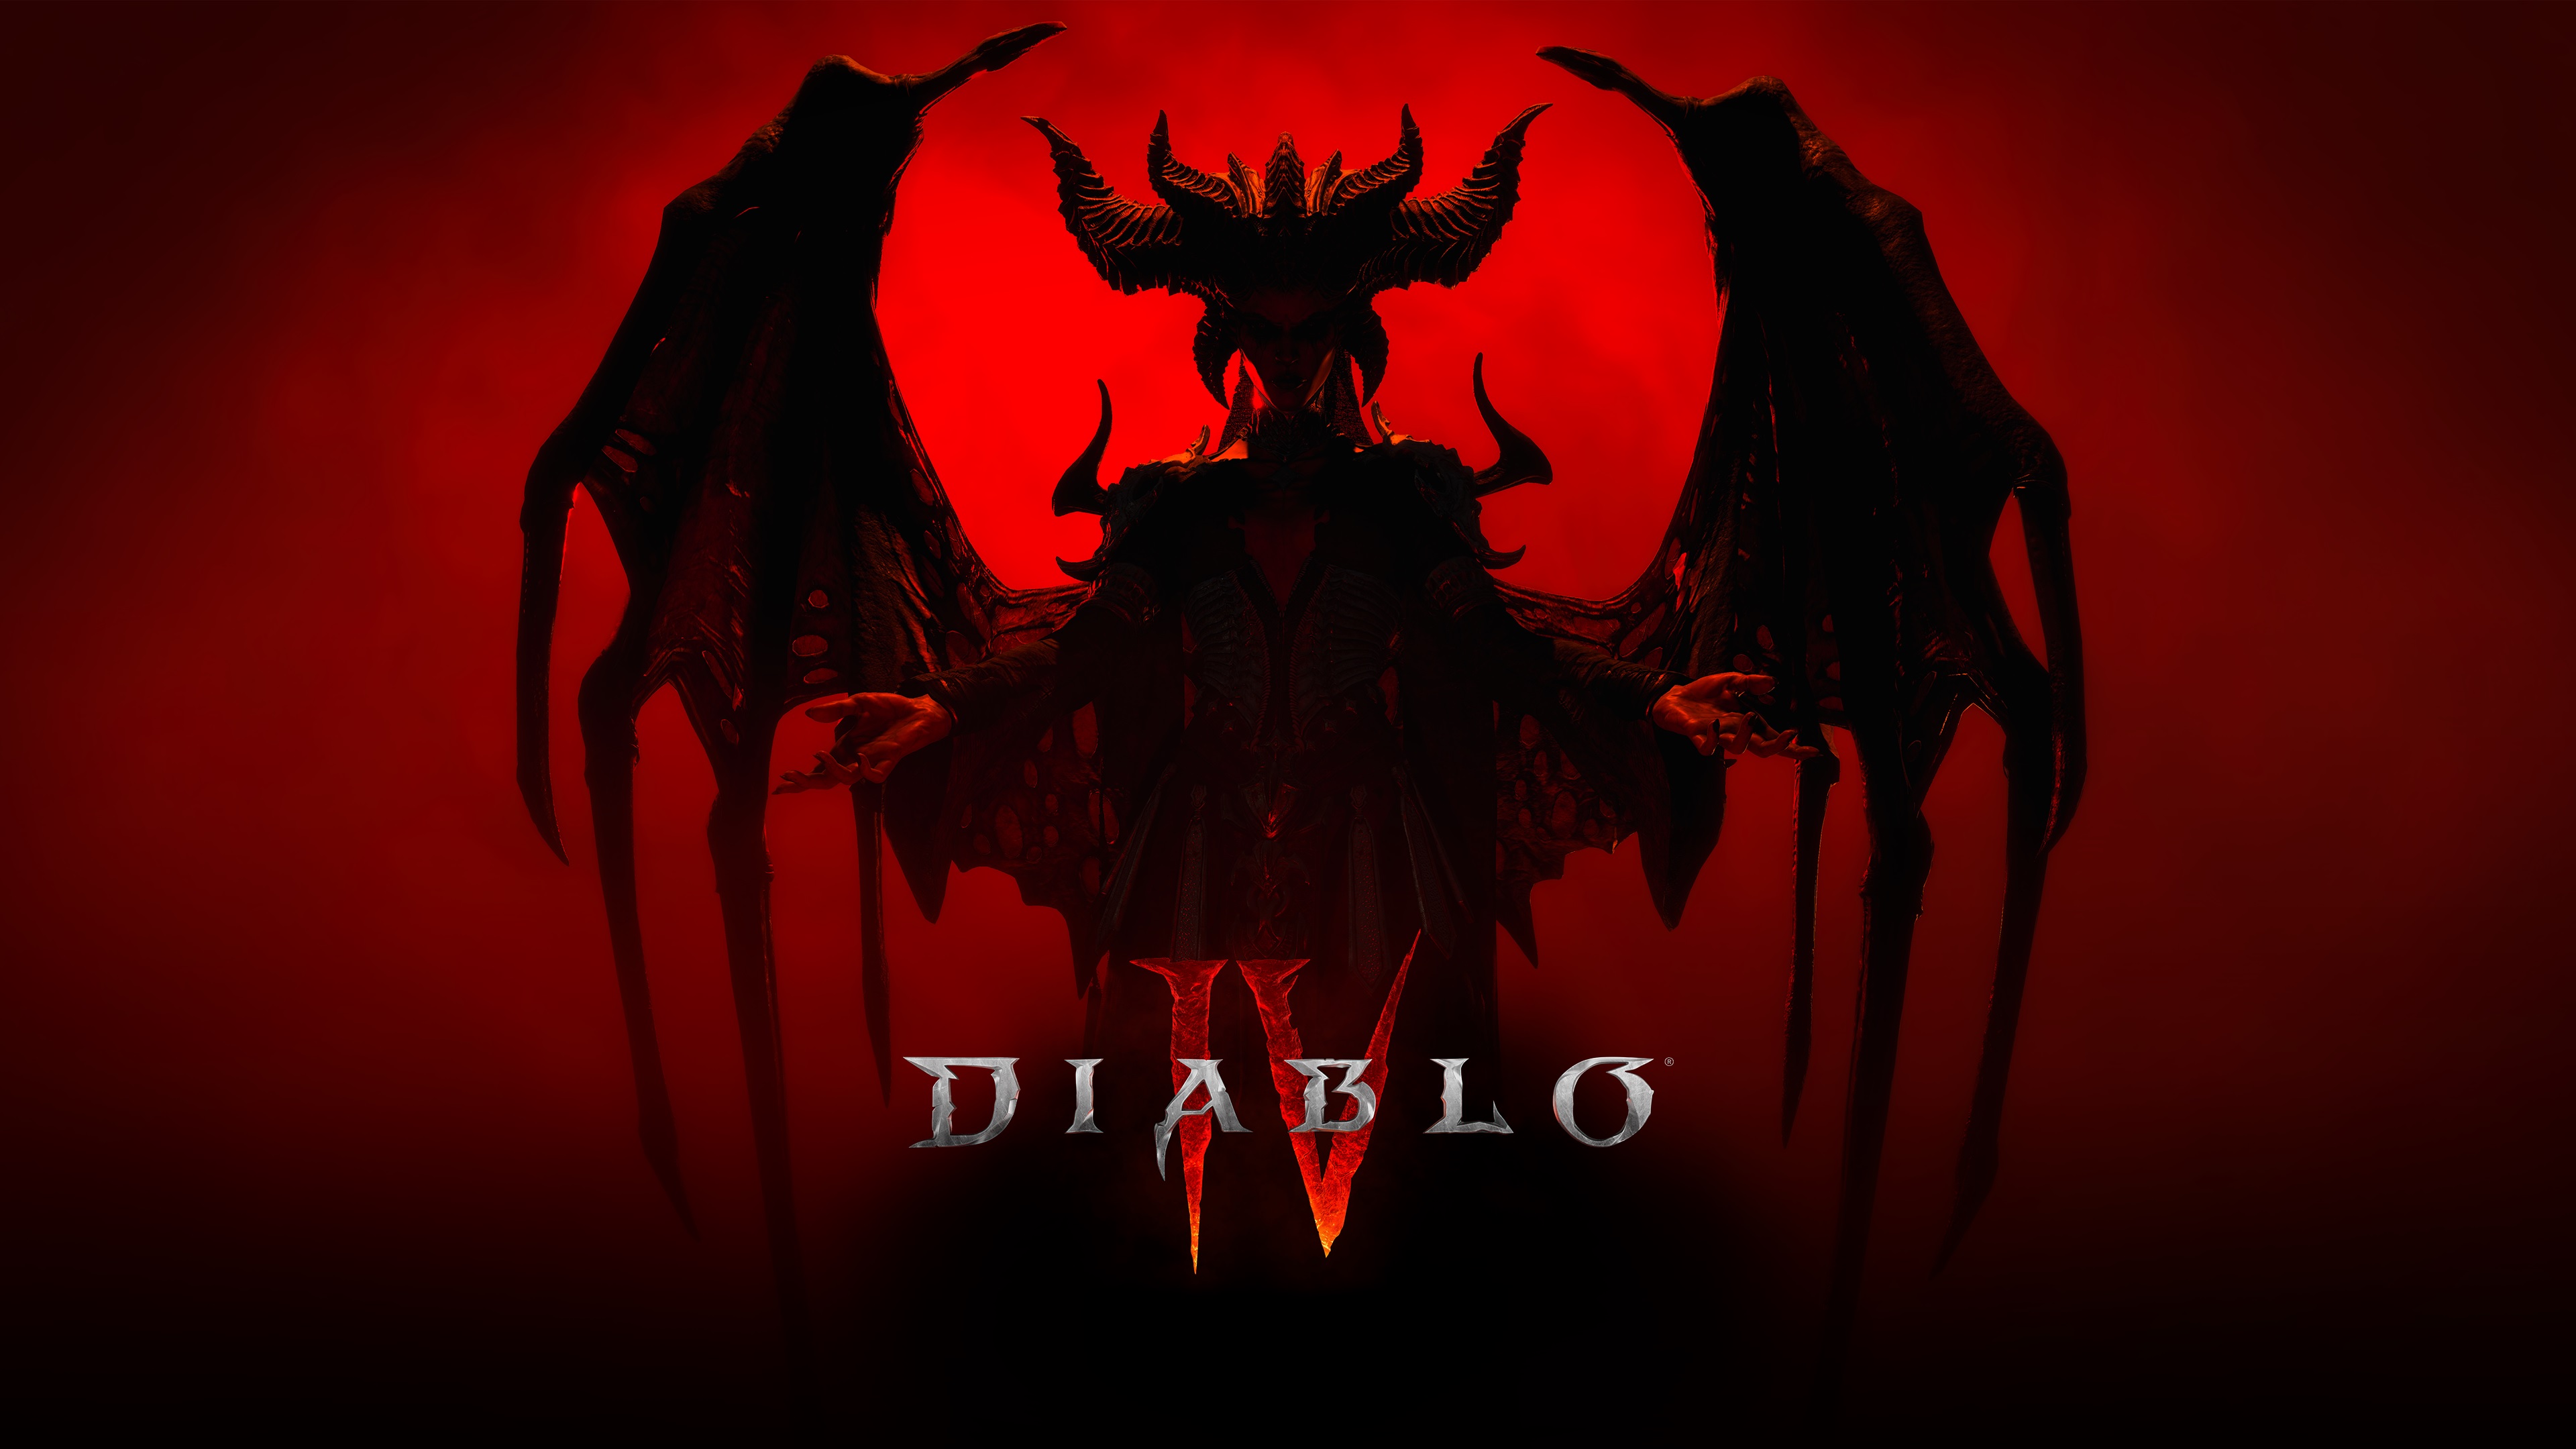 I played Diablo Immortal. AMA. : r/Diablo